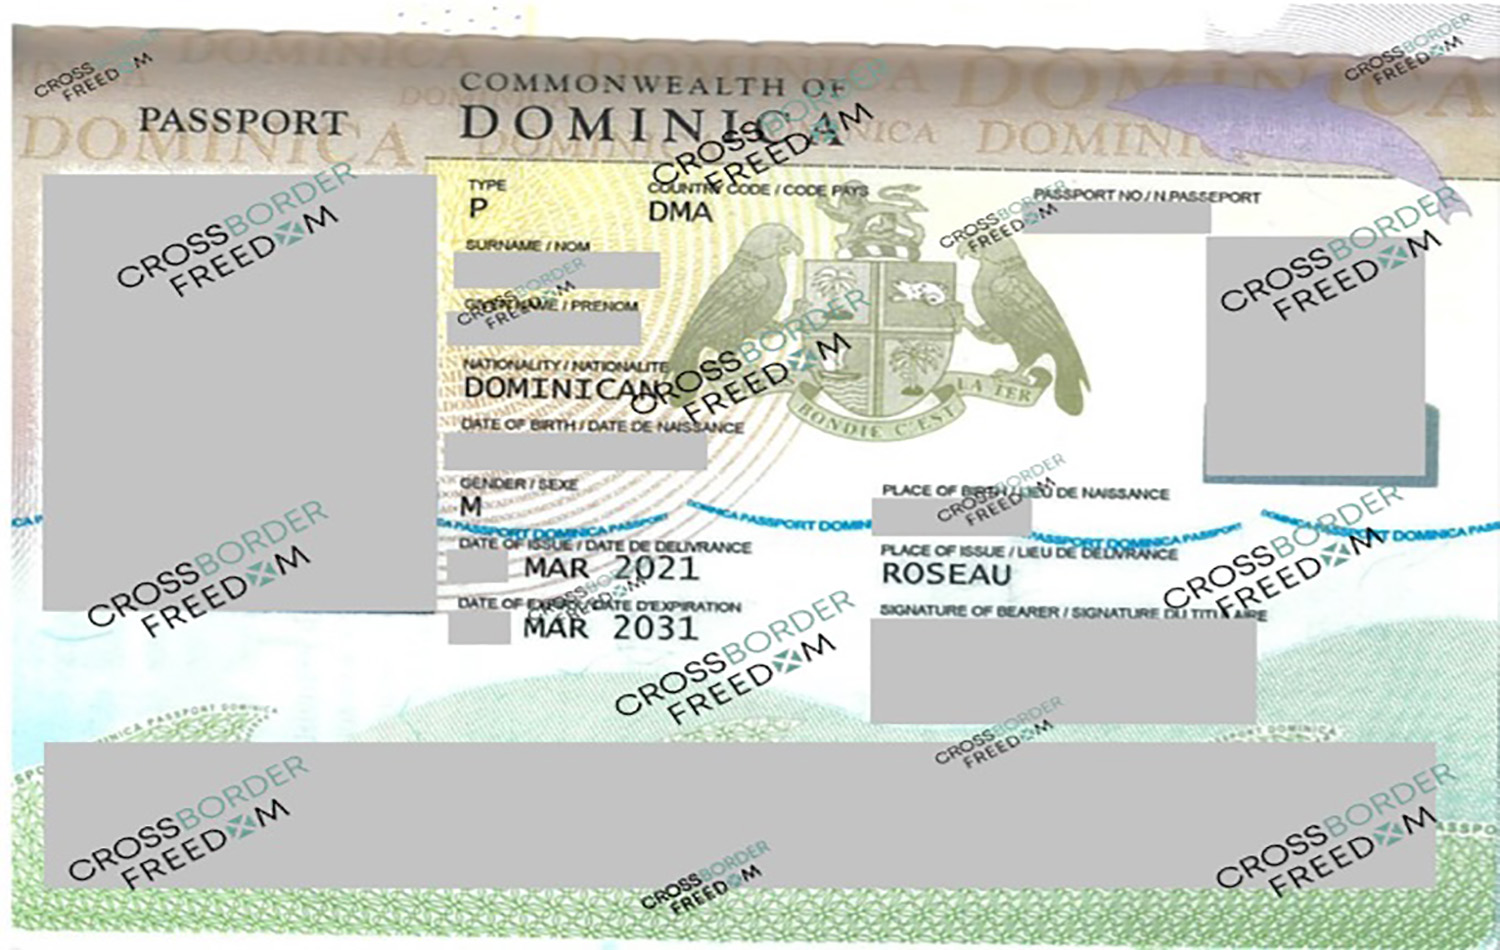 check passport status dominican republic